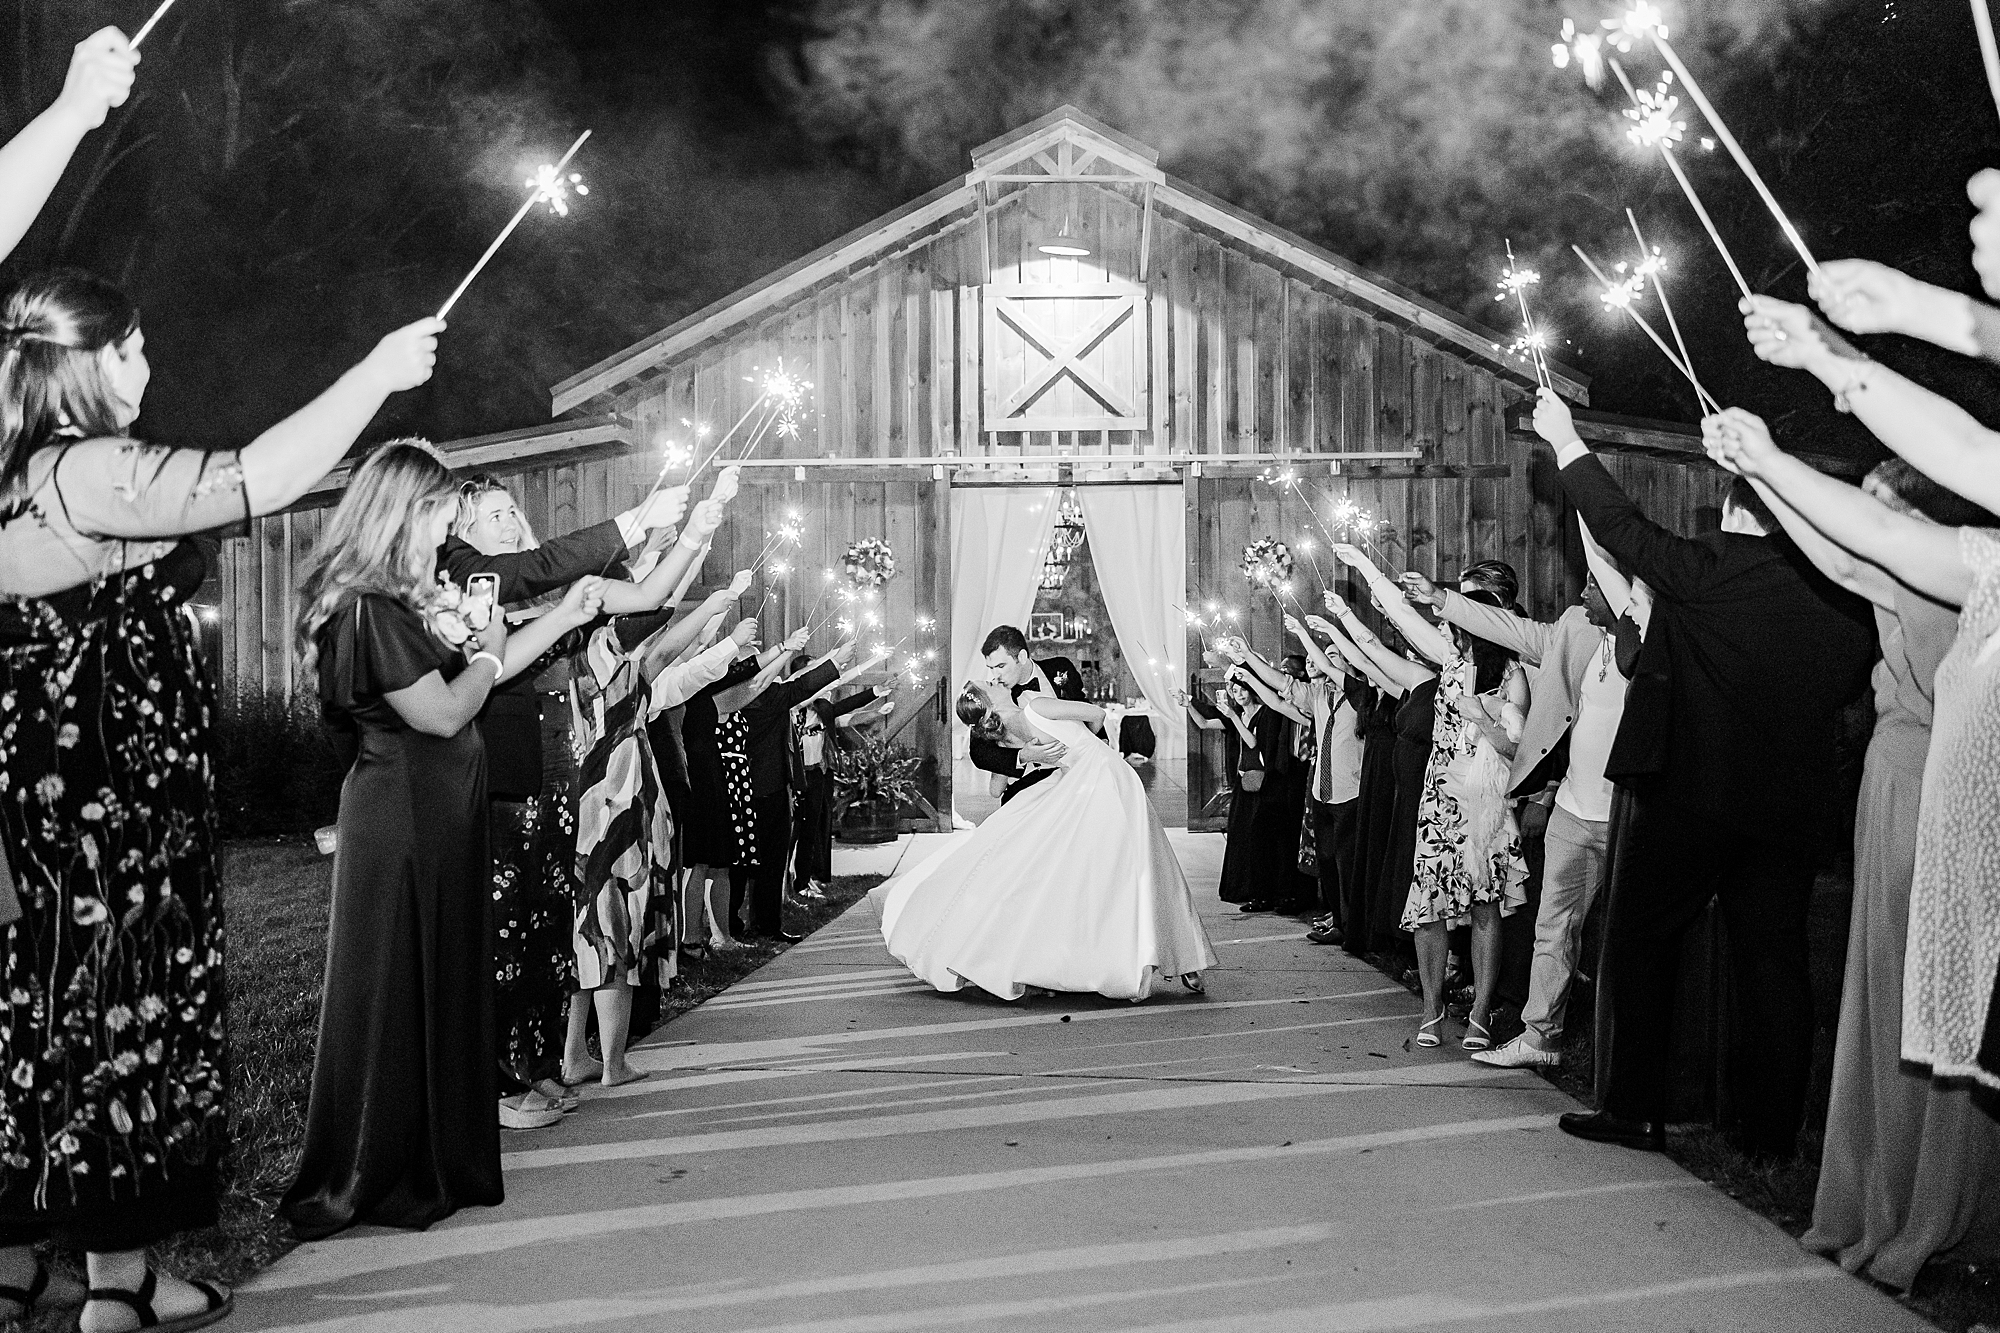 sparkler exit at end of wedding reception